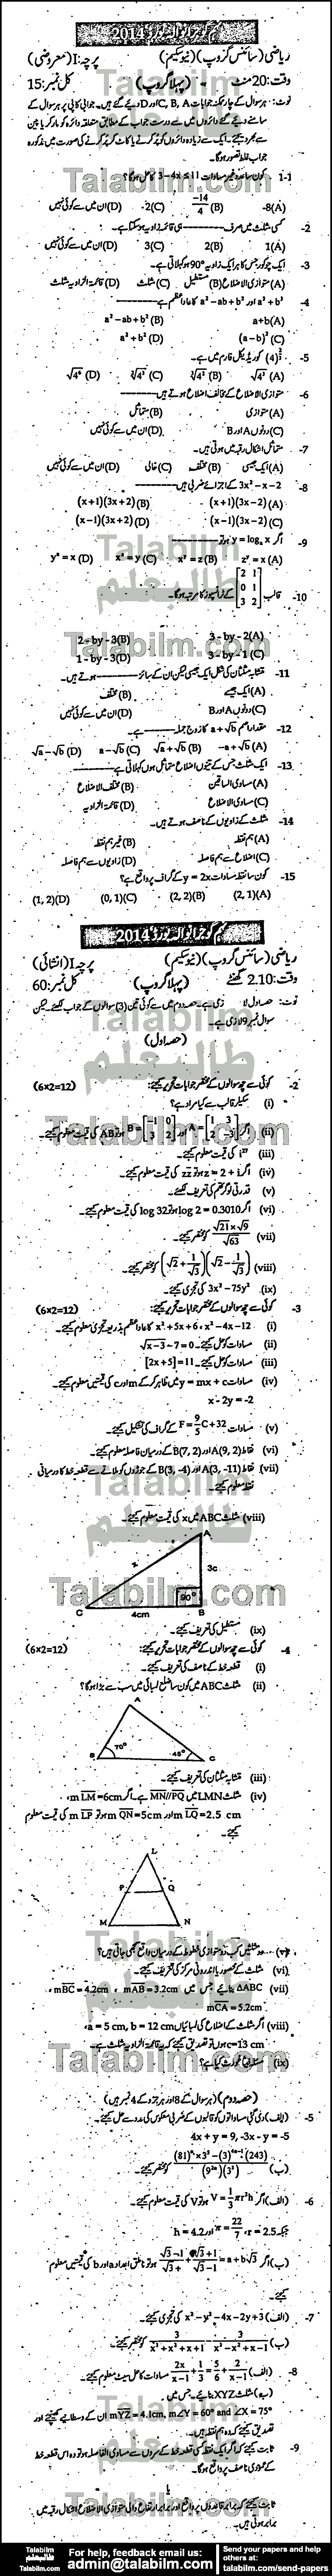 Math 0 past paper for Urdu Medium 2014 Group-I